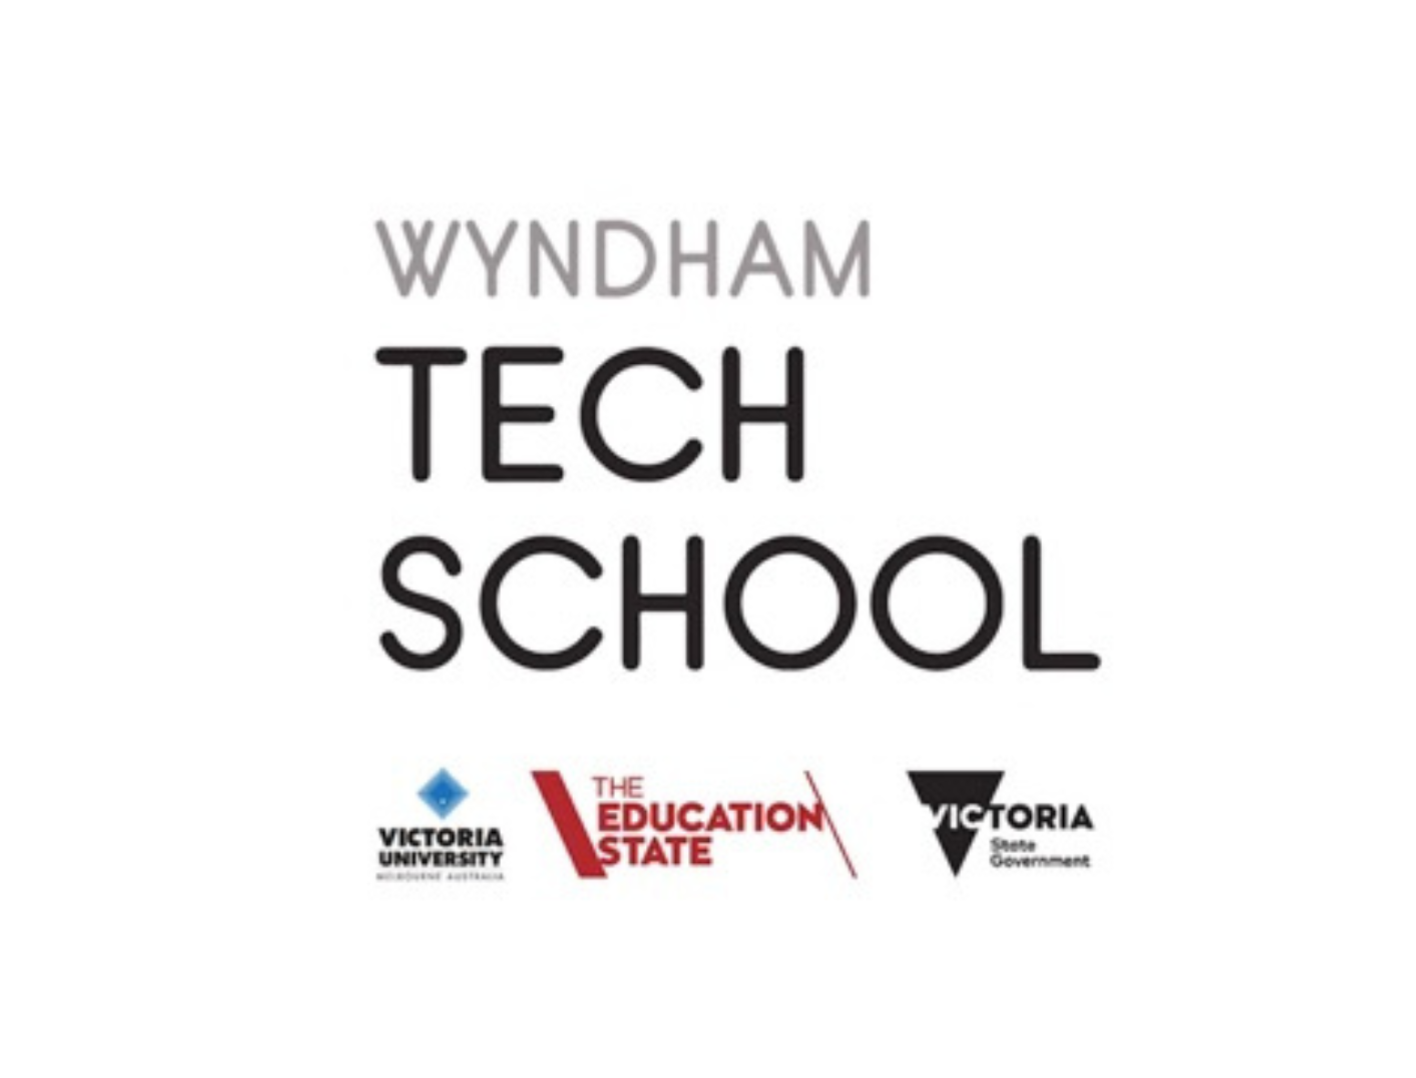 Wyndham Tech School